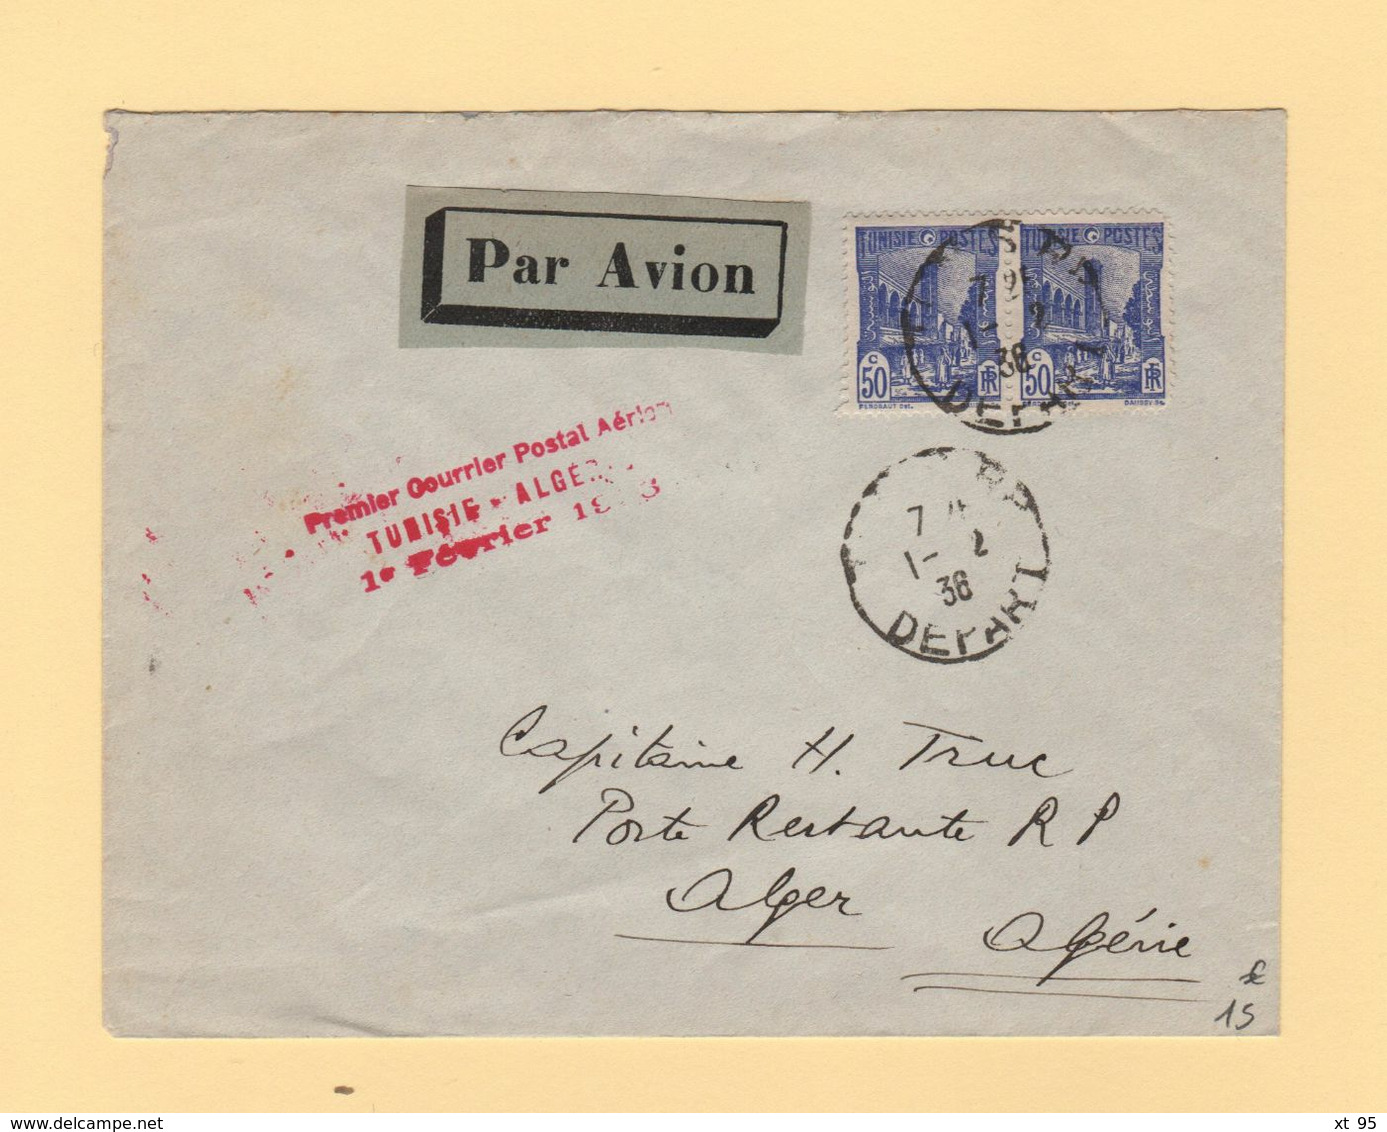 Tunisie - Premier Courrier Postal Aerien Tunisie Algerie - 1er Fevrier 1936 - Aéreo